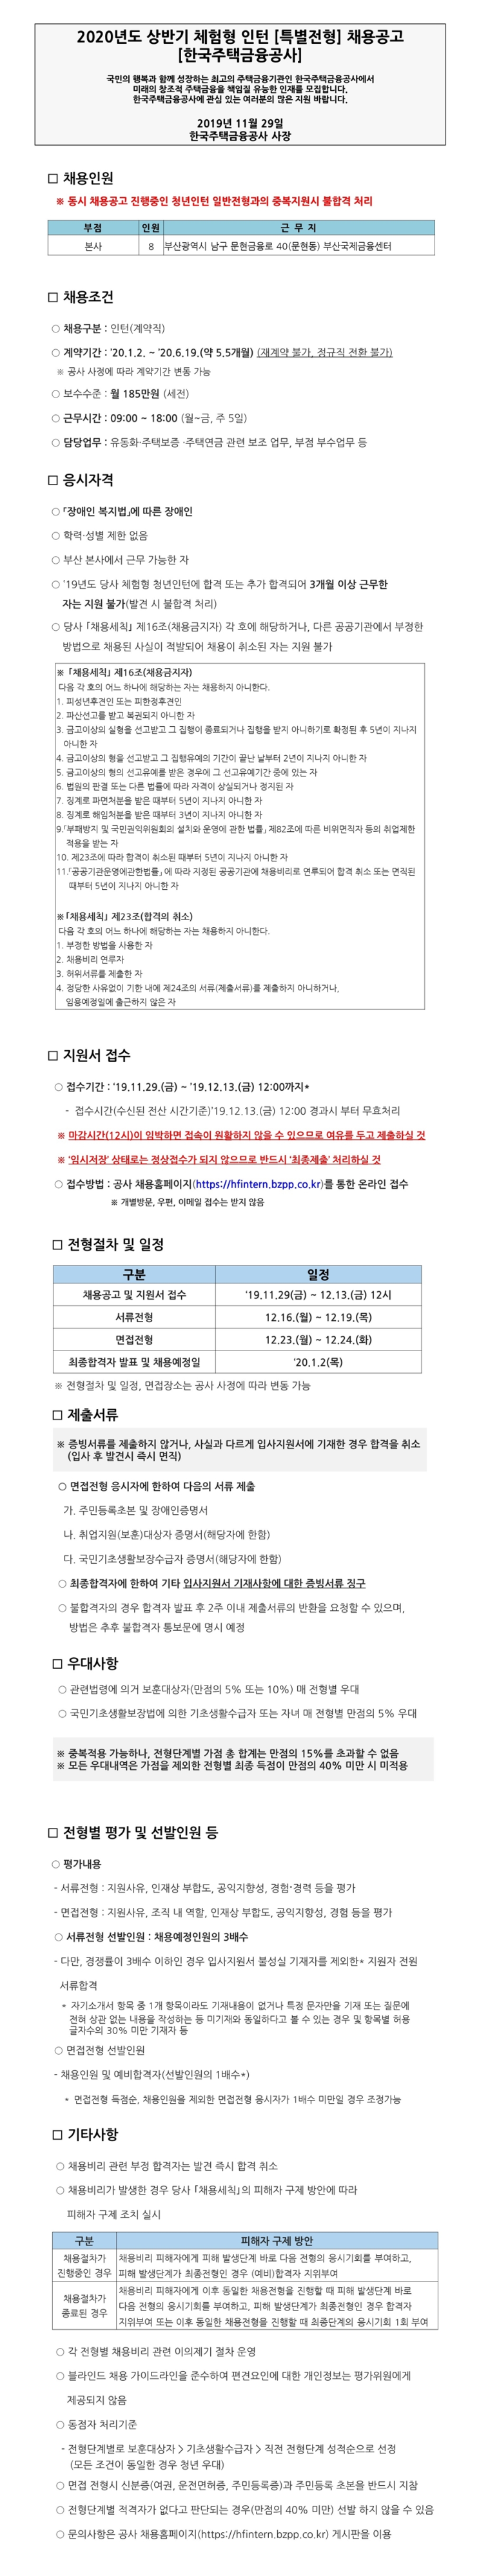 [채용][한국주택금융공사] 2020년 상반기 체험형 인턴(특별전형)